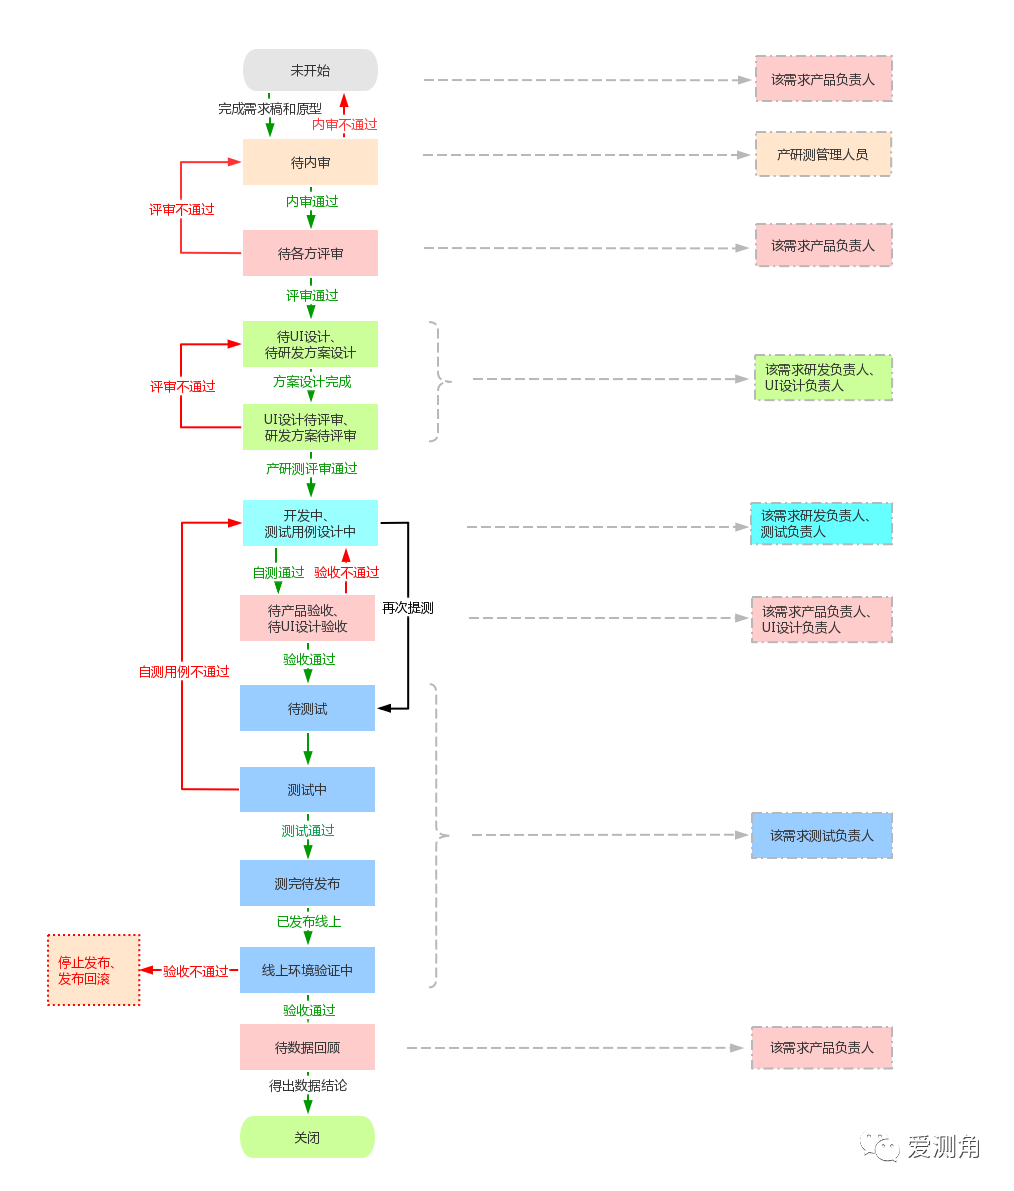 图 2-1 【爱测角】软件项目协作流程——优化版